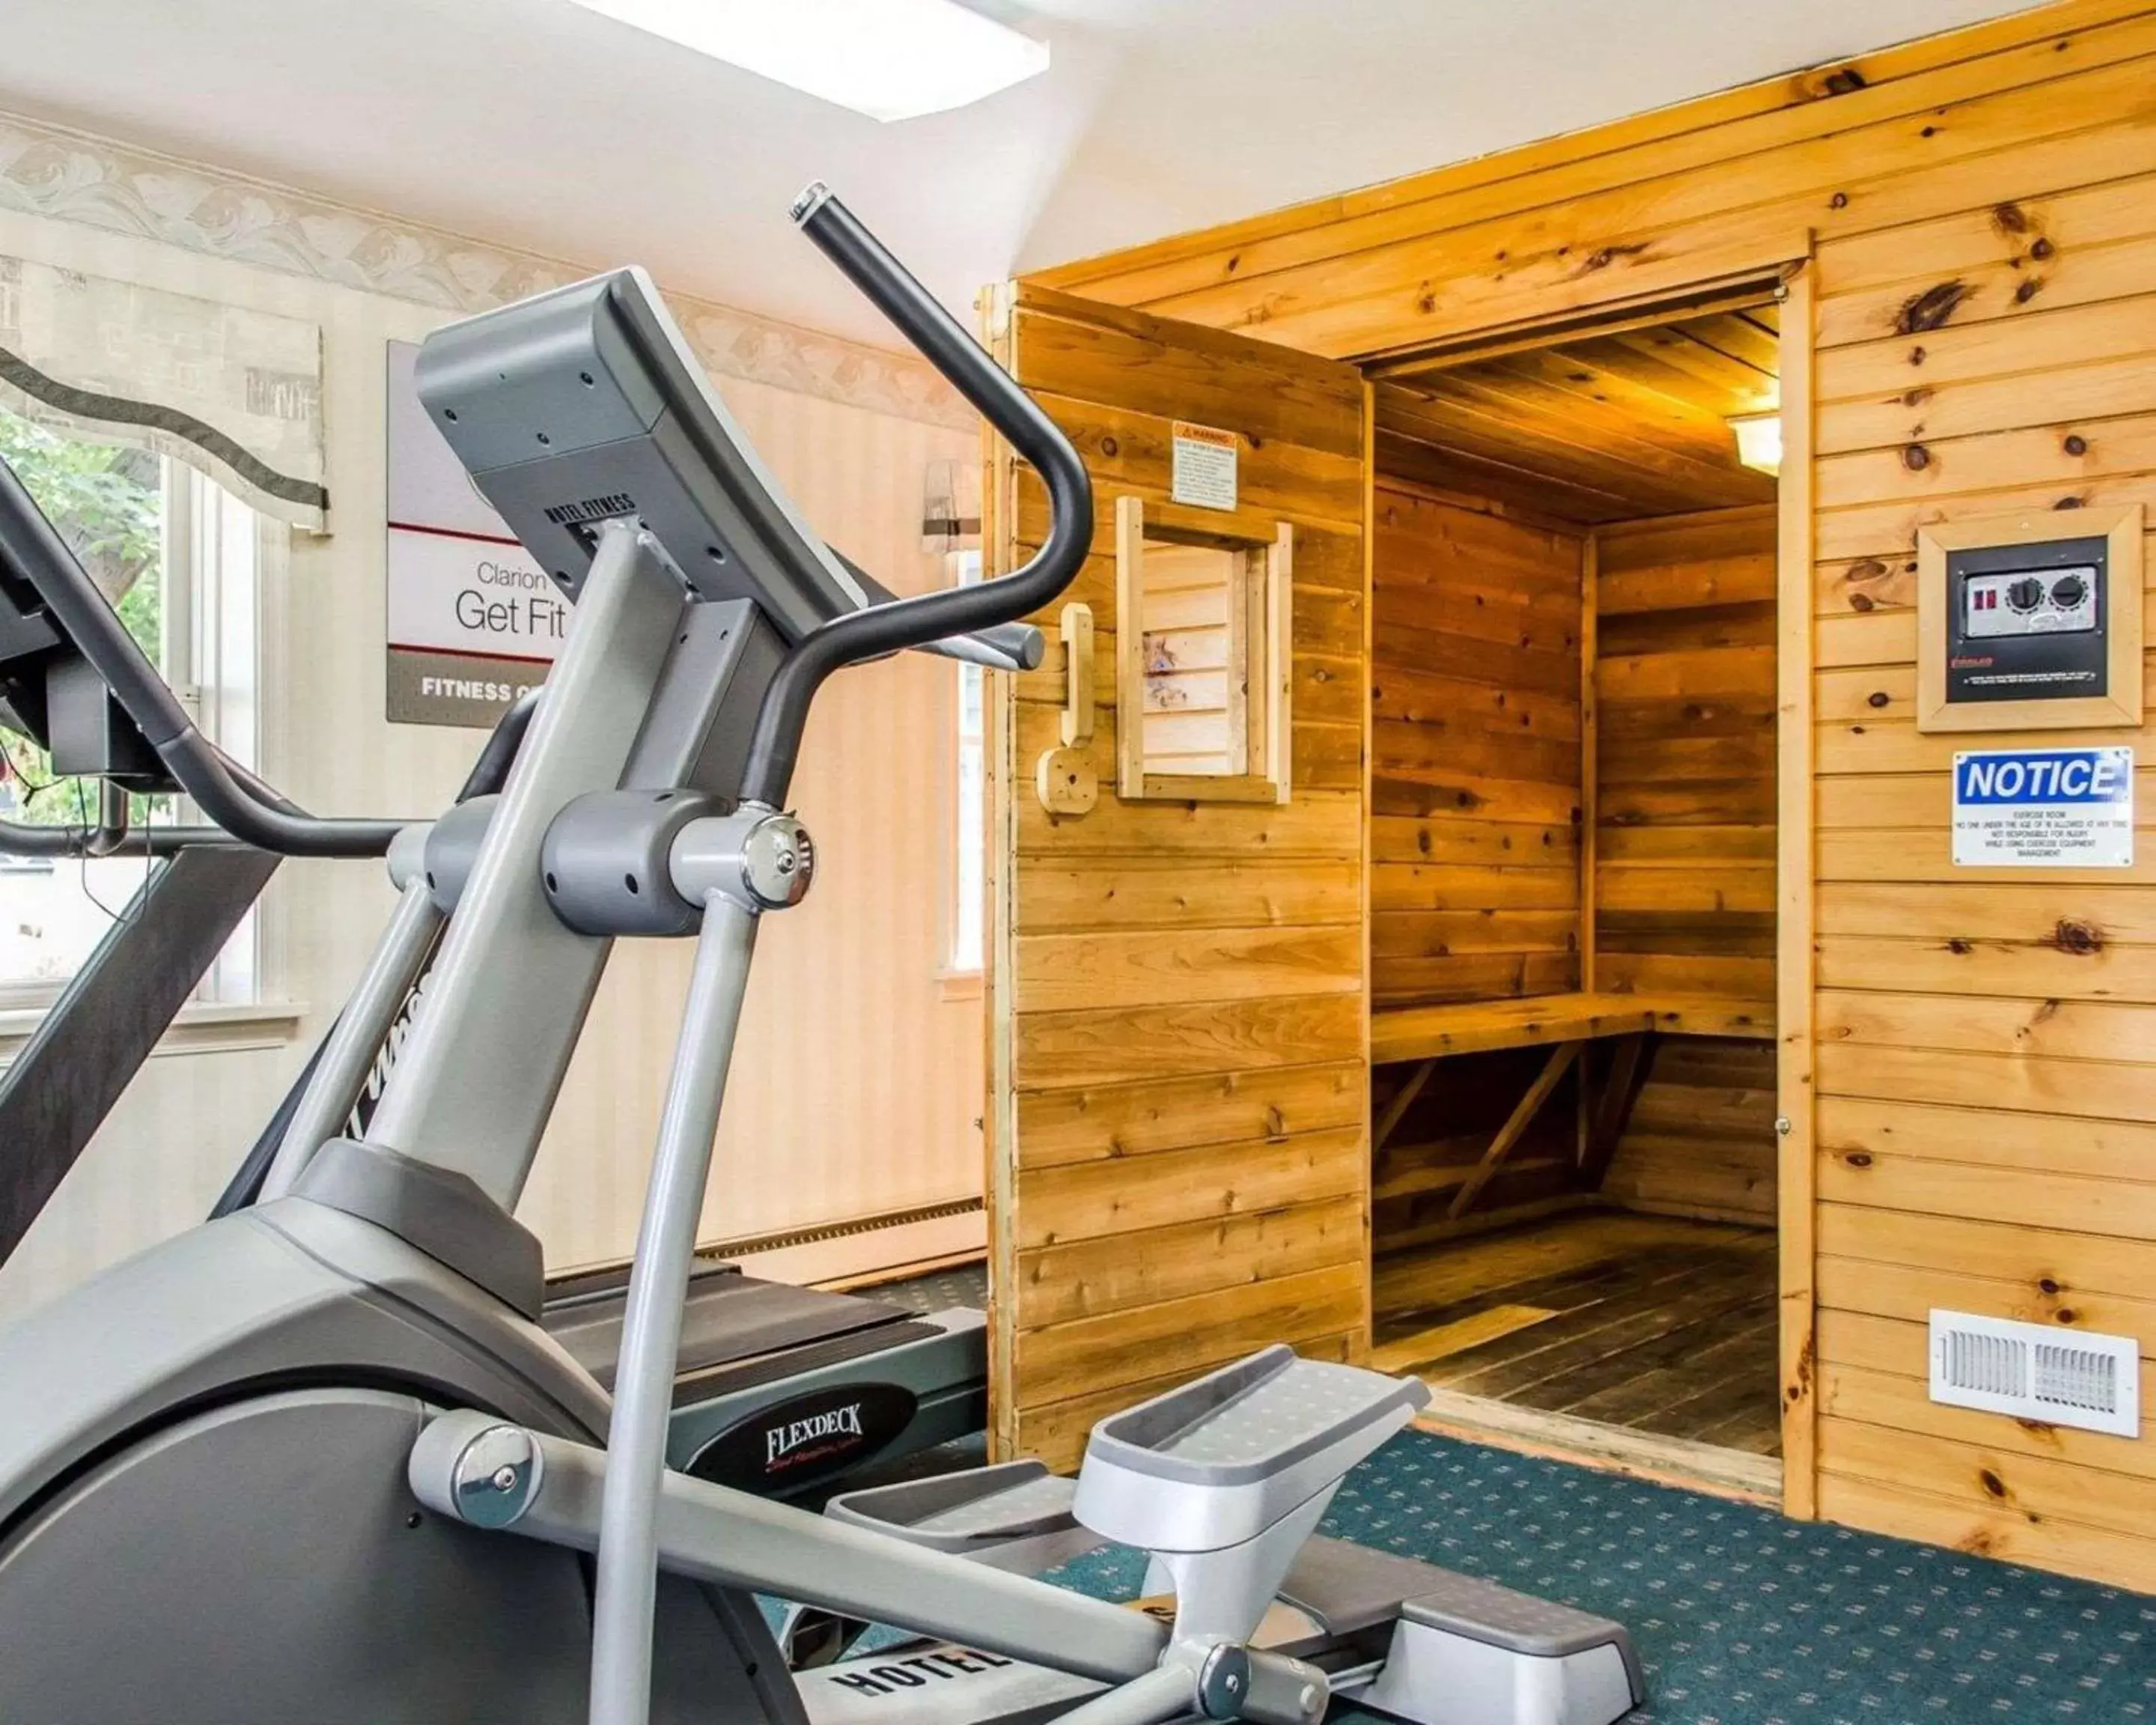 Fitness centre/facilities, Fitness Center/Facilities in Clarion Inn Strasburg - Lancaster